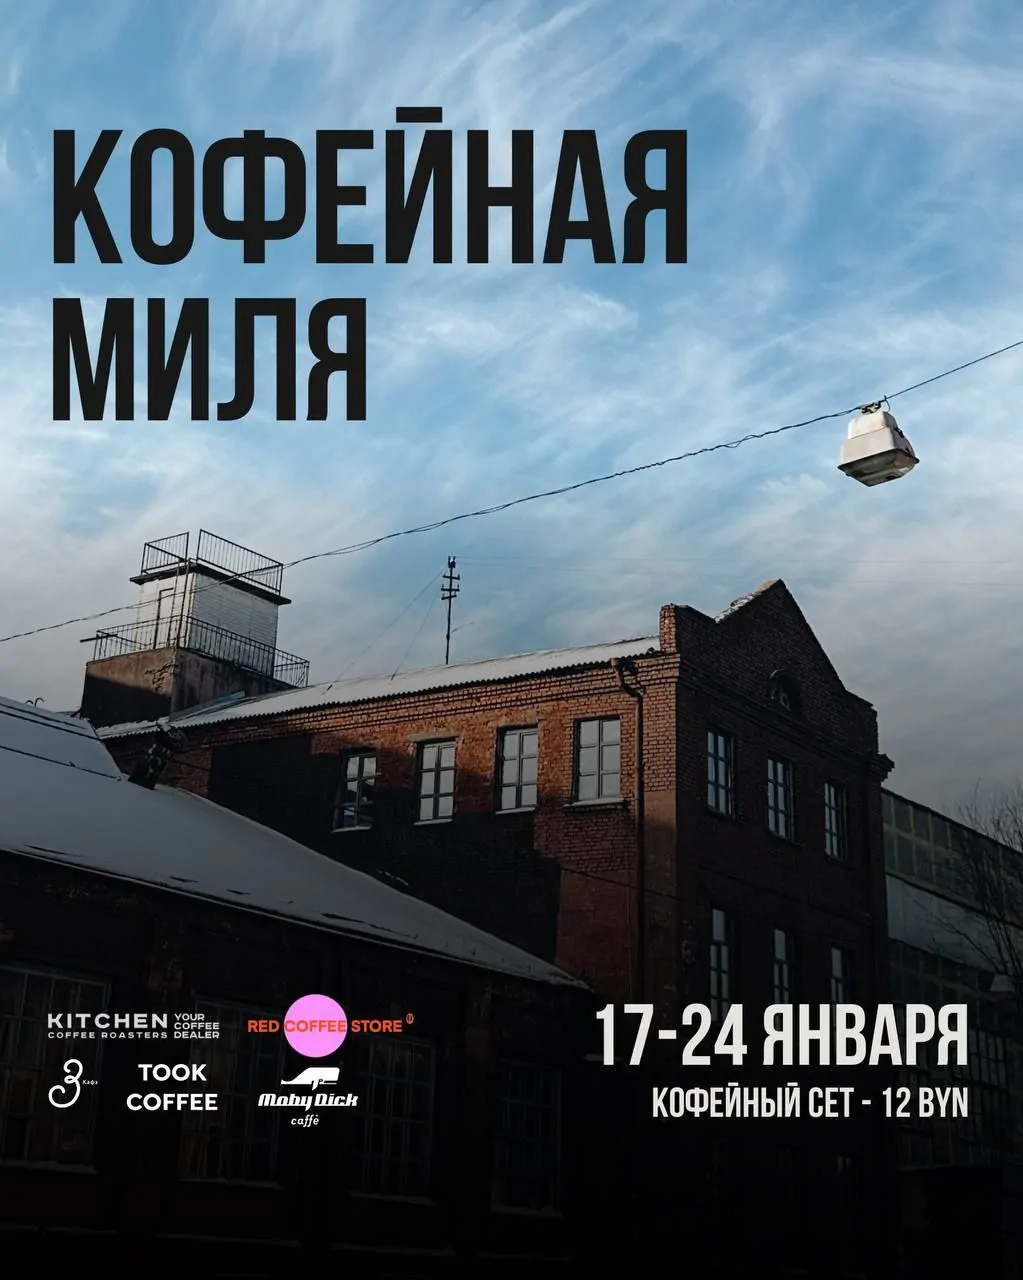 На Октябрьской стартует фестиваль «Кофейная миля» с сетами по 12 рублей